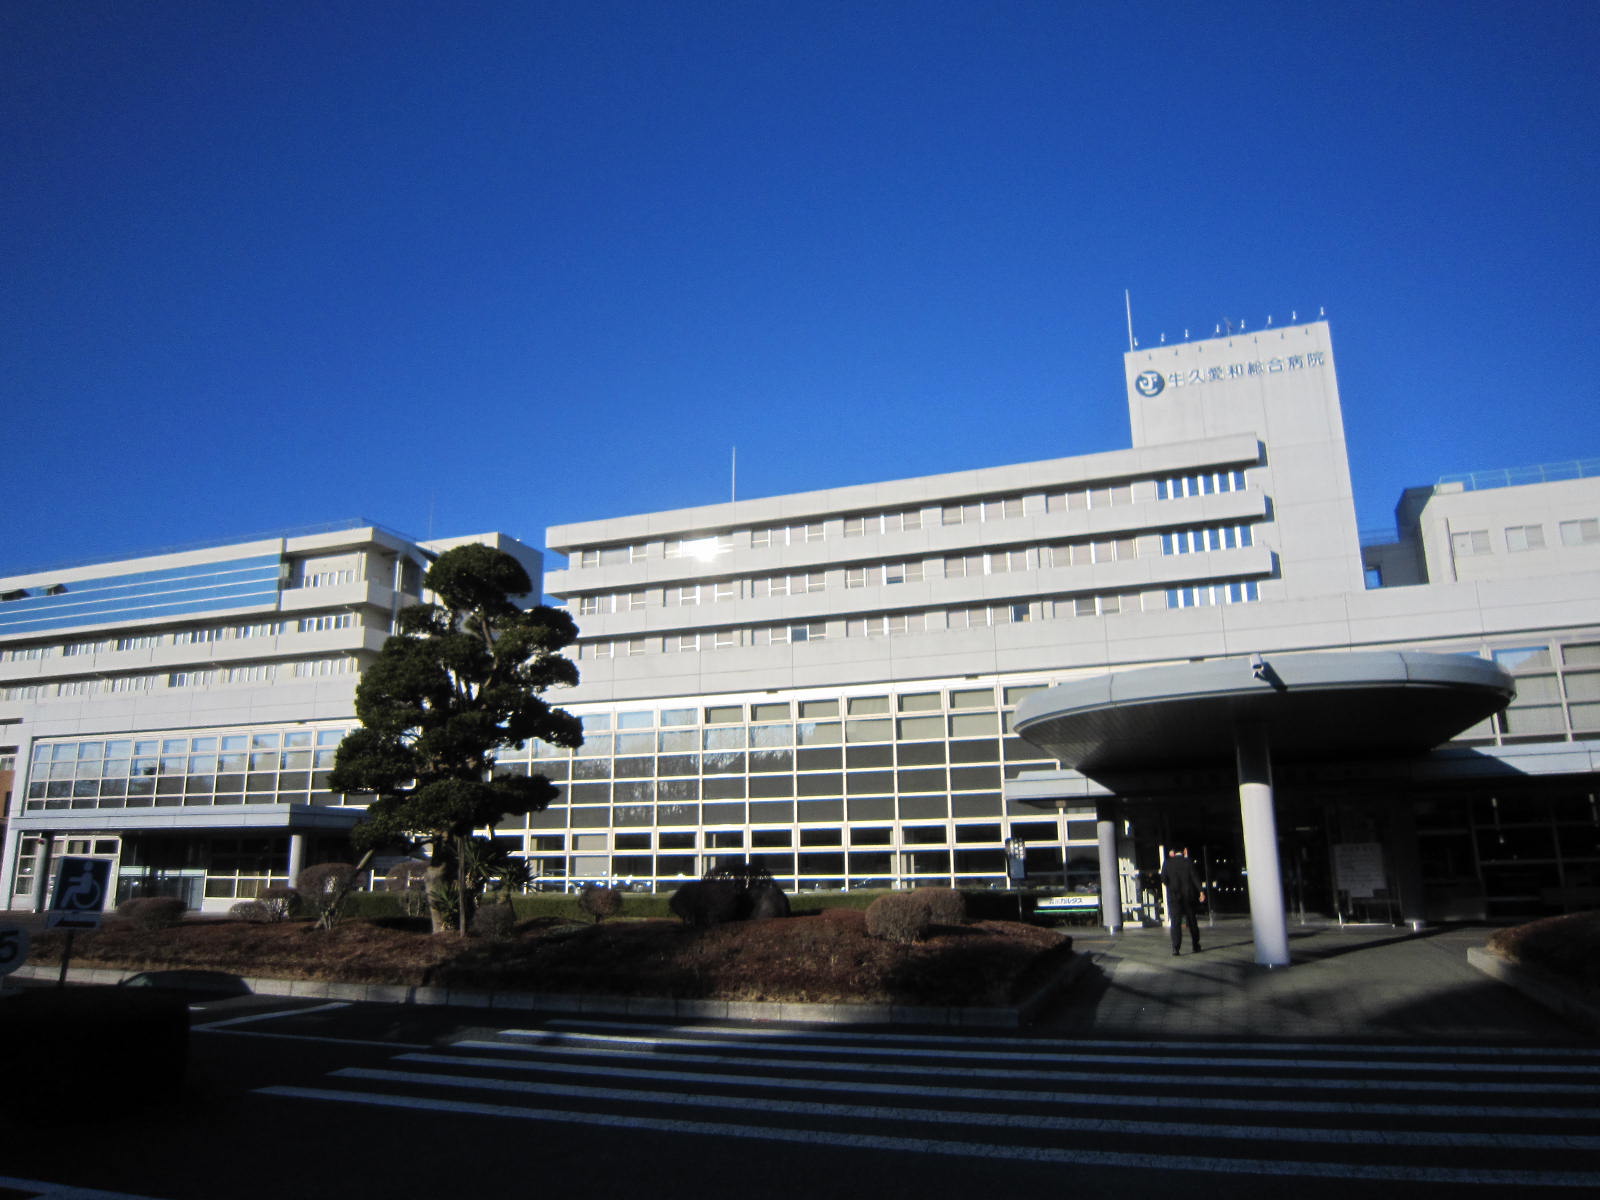 Hospital. Ushikuaiwasogobyoin until the (hospital) 1639m